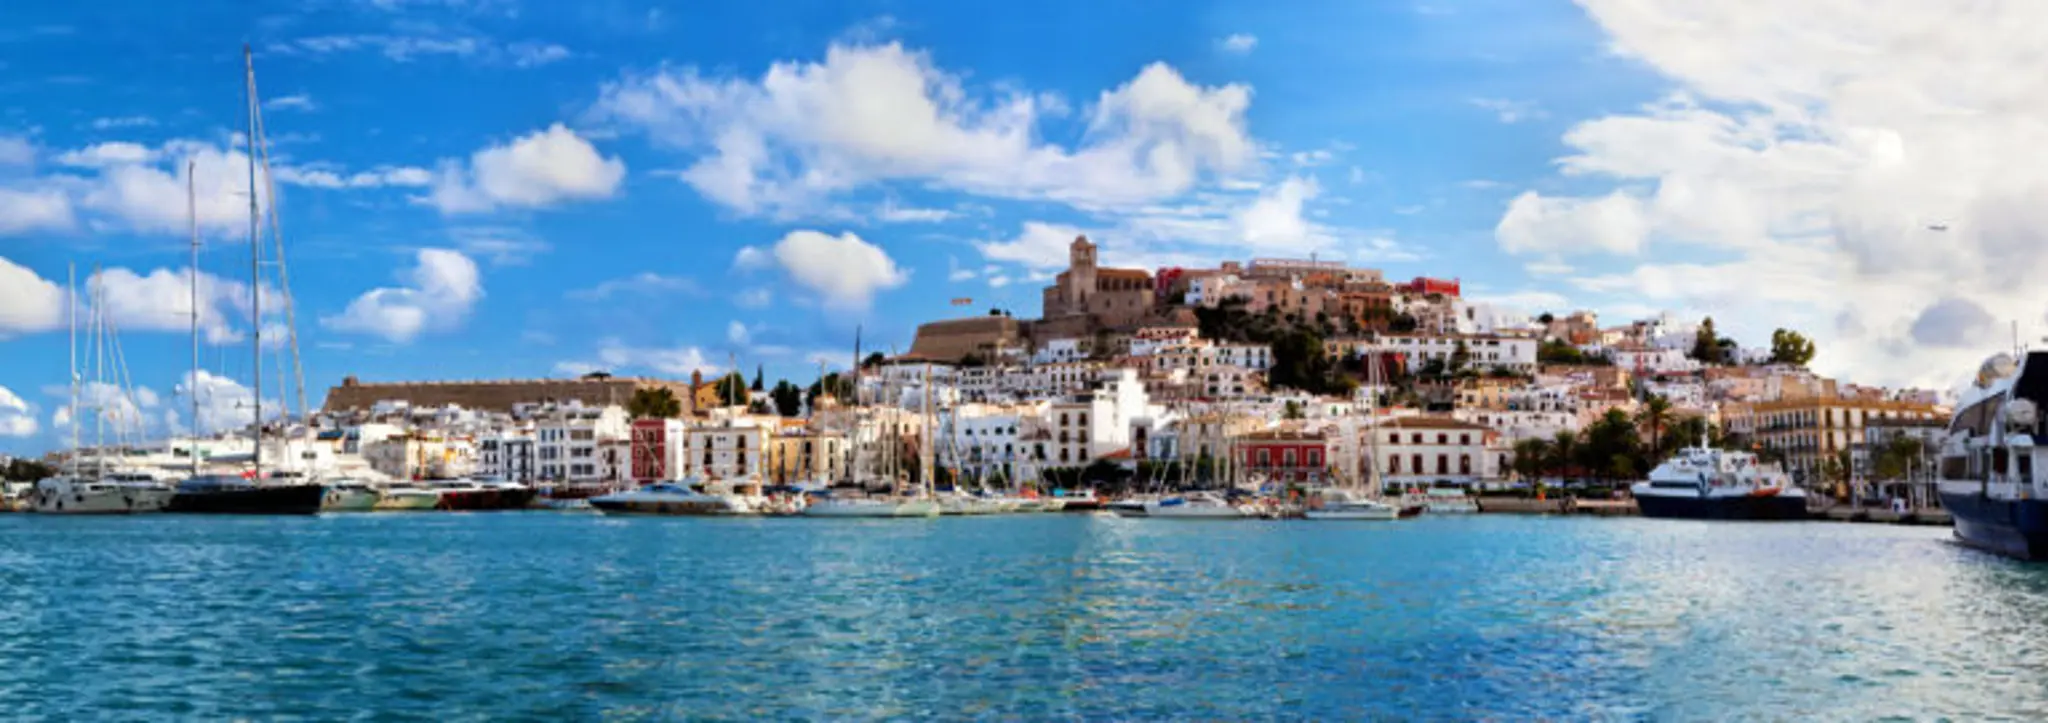 Die Altstadt von Ibiza: Eine kurze Geschichte